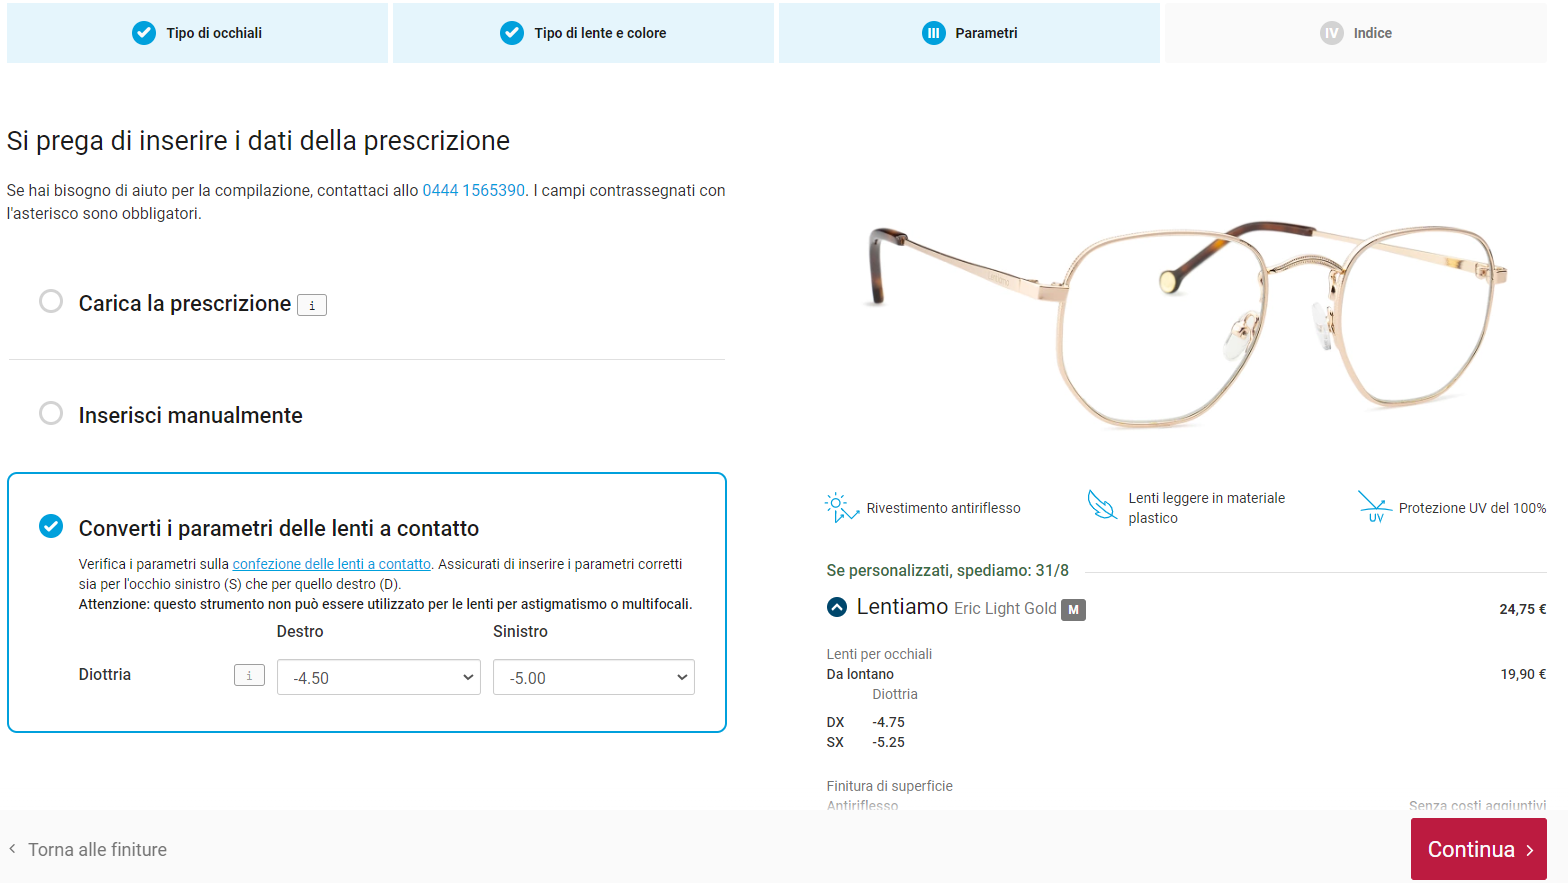 schermata del calcolatore di conversione parametri da lenti a contatto a occhiali durante l'ordine